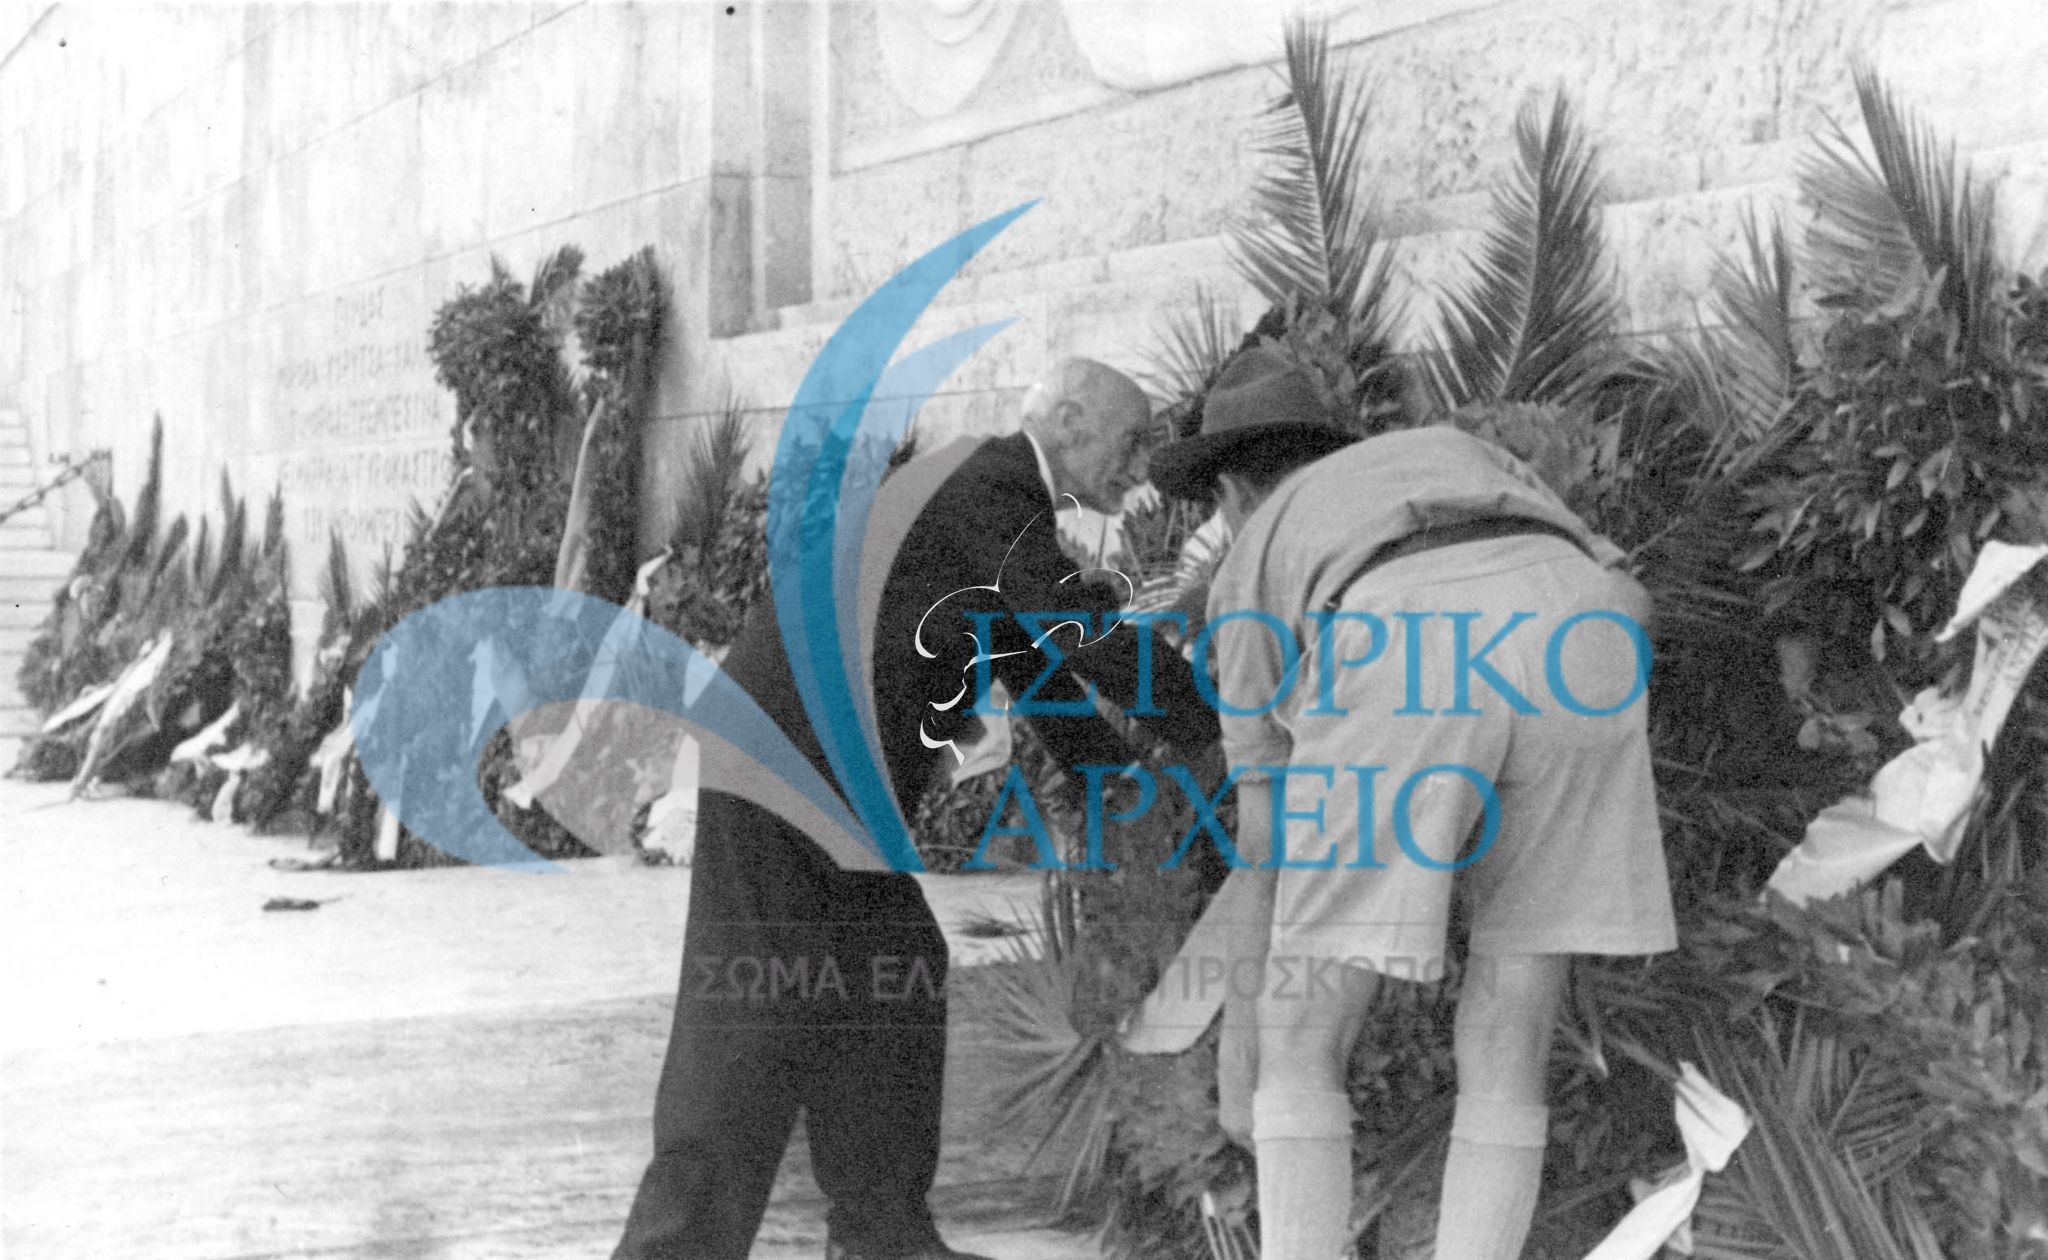 Ο Αντώνης Μπενάκης μαζί με πρόσκοπο καταθέτουν Στεφάνι στο Μνημείο του Αγνώστου Στρατιώτη επί τη ευκαιρία της επετείου της 28ης Οκτωβρίου το 1945.